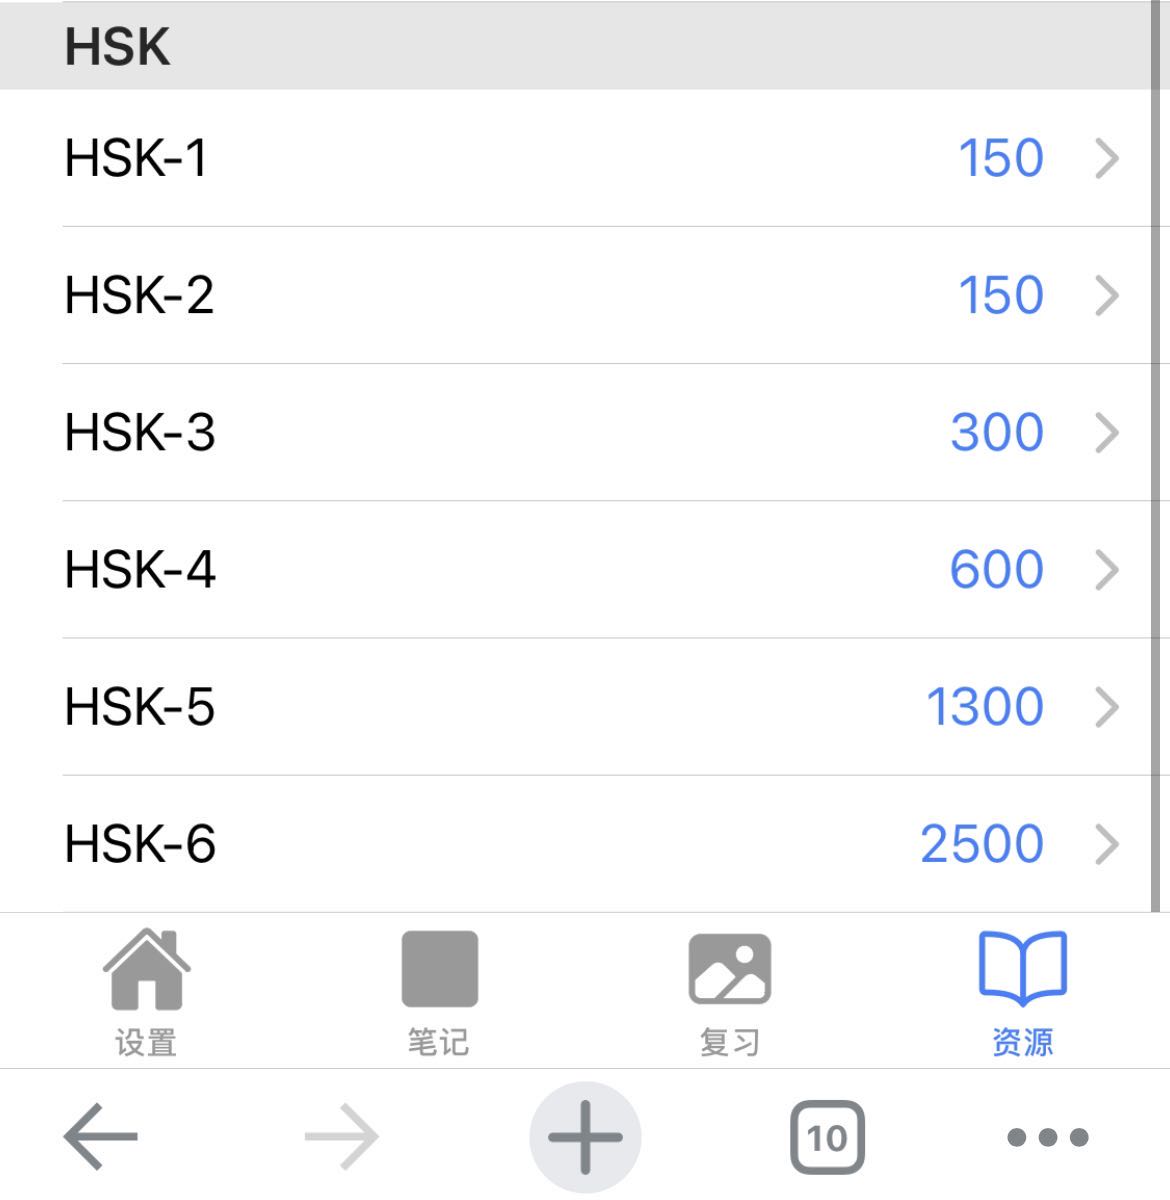 HSK Resource